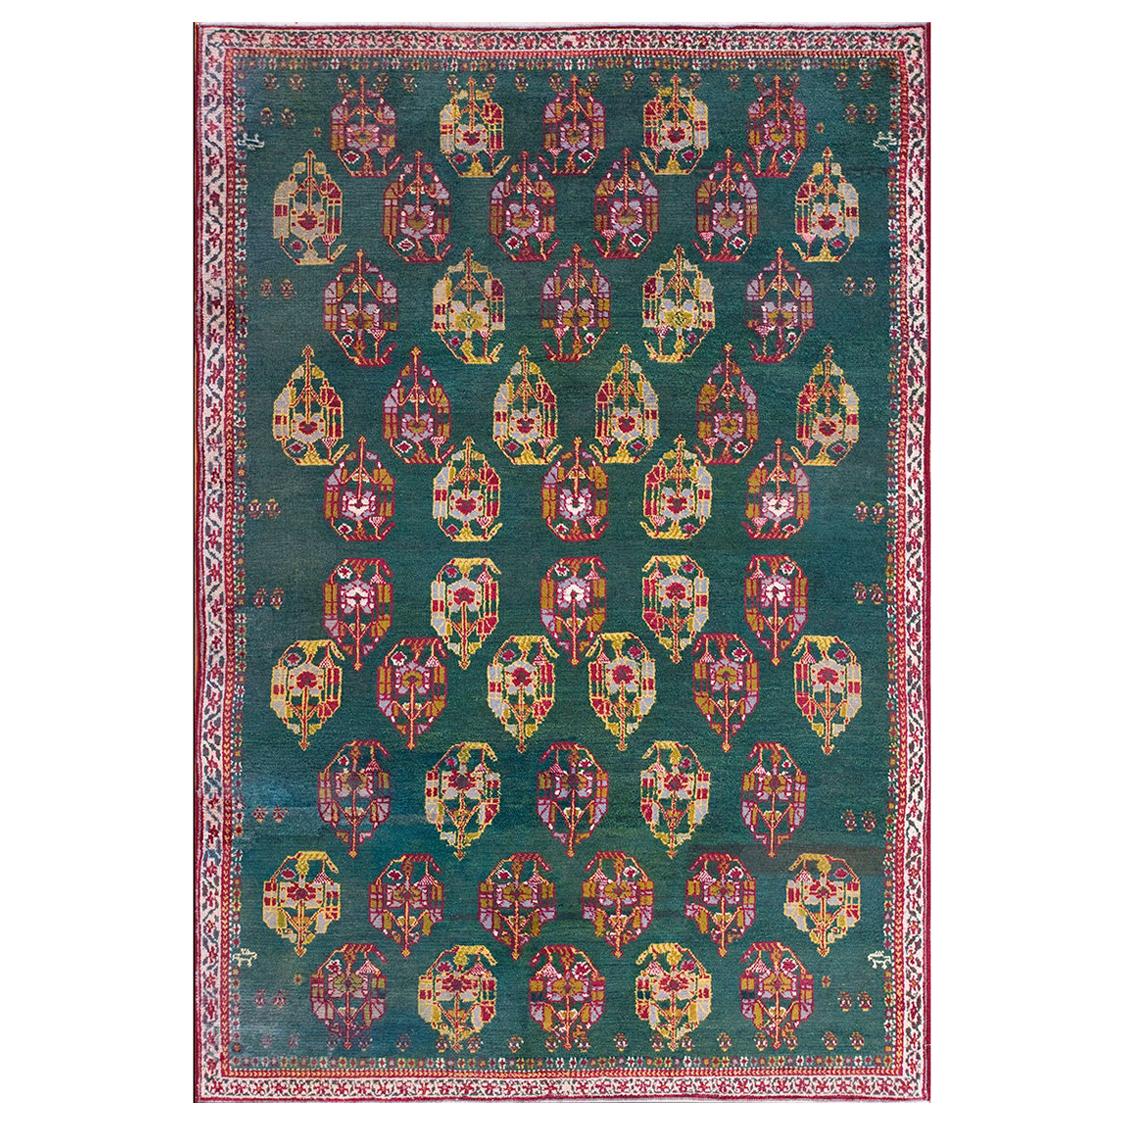 Indischer Agra-Teppich des frühen 20. Jahrhunderts ( 5'10" x 8'6" - 178 x 260)